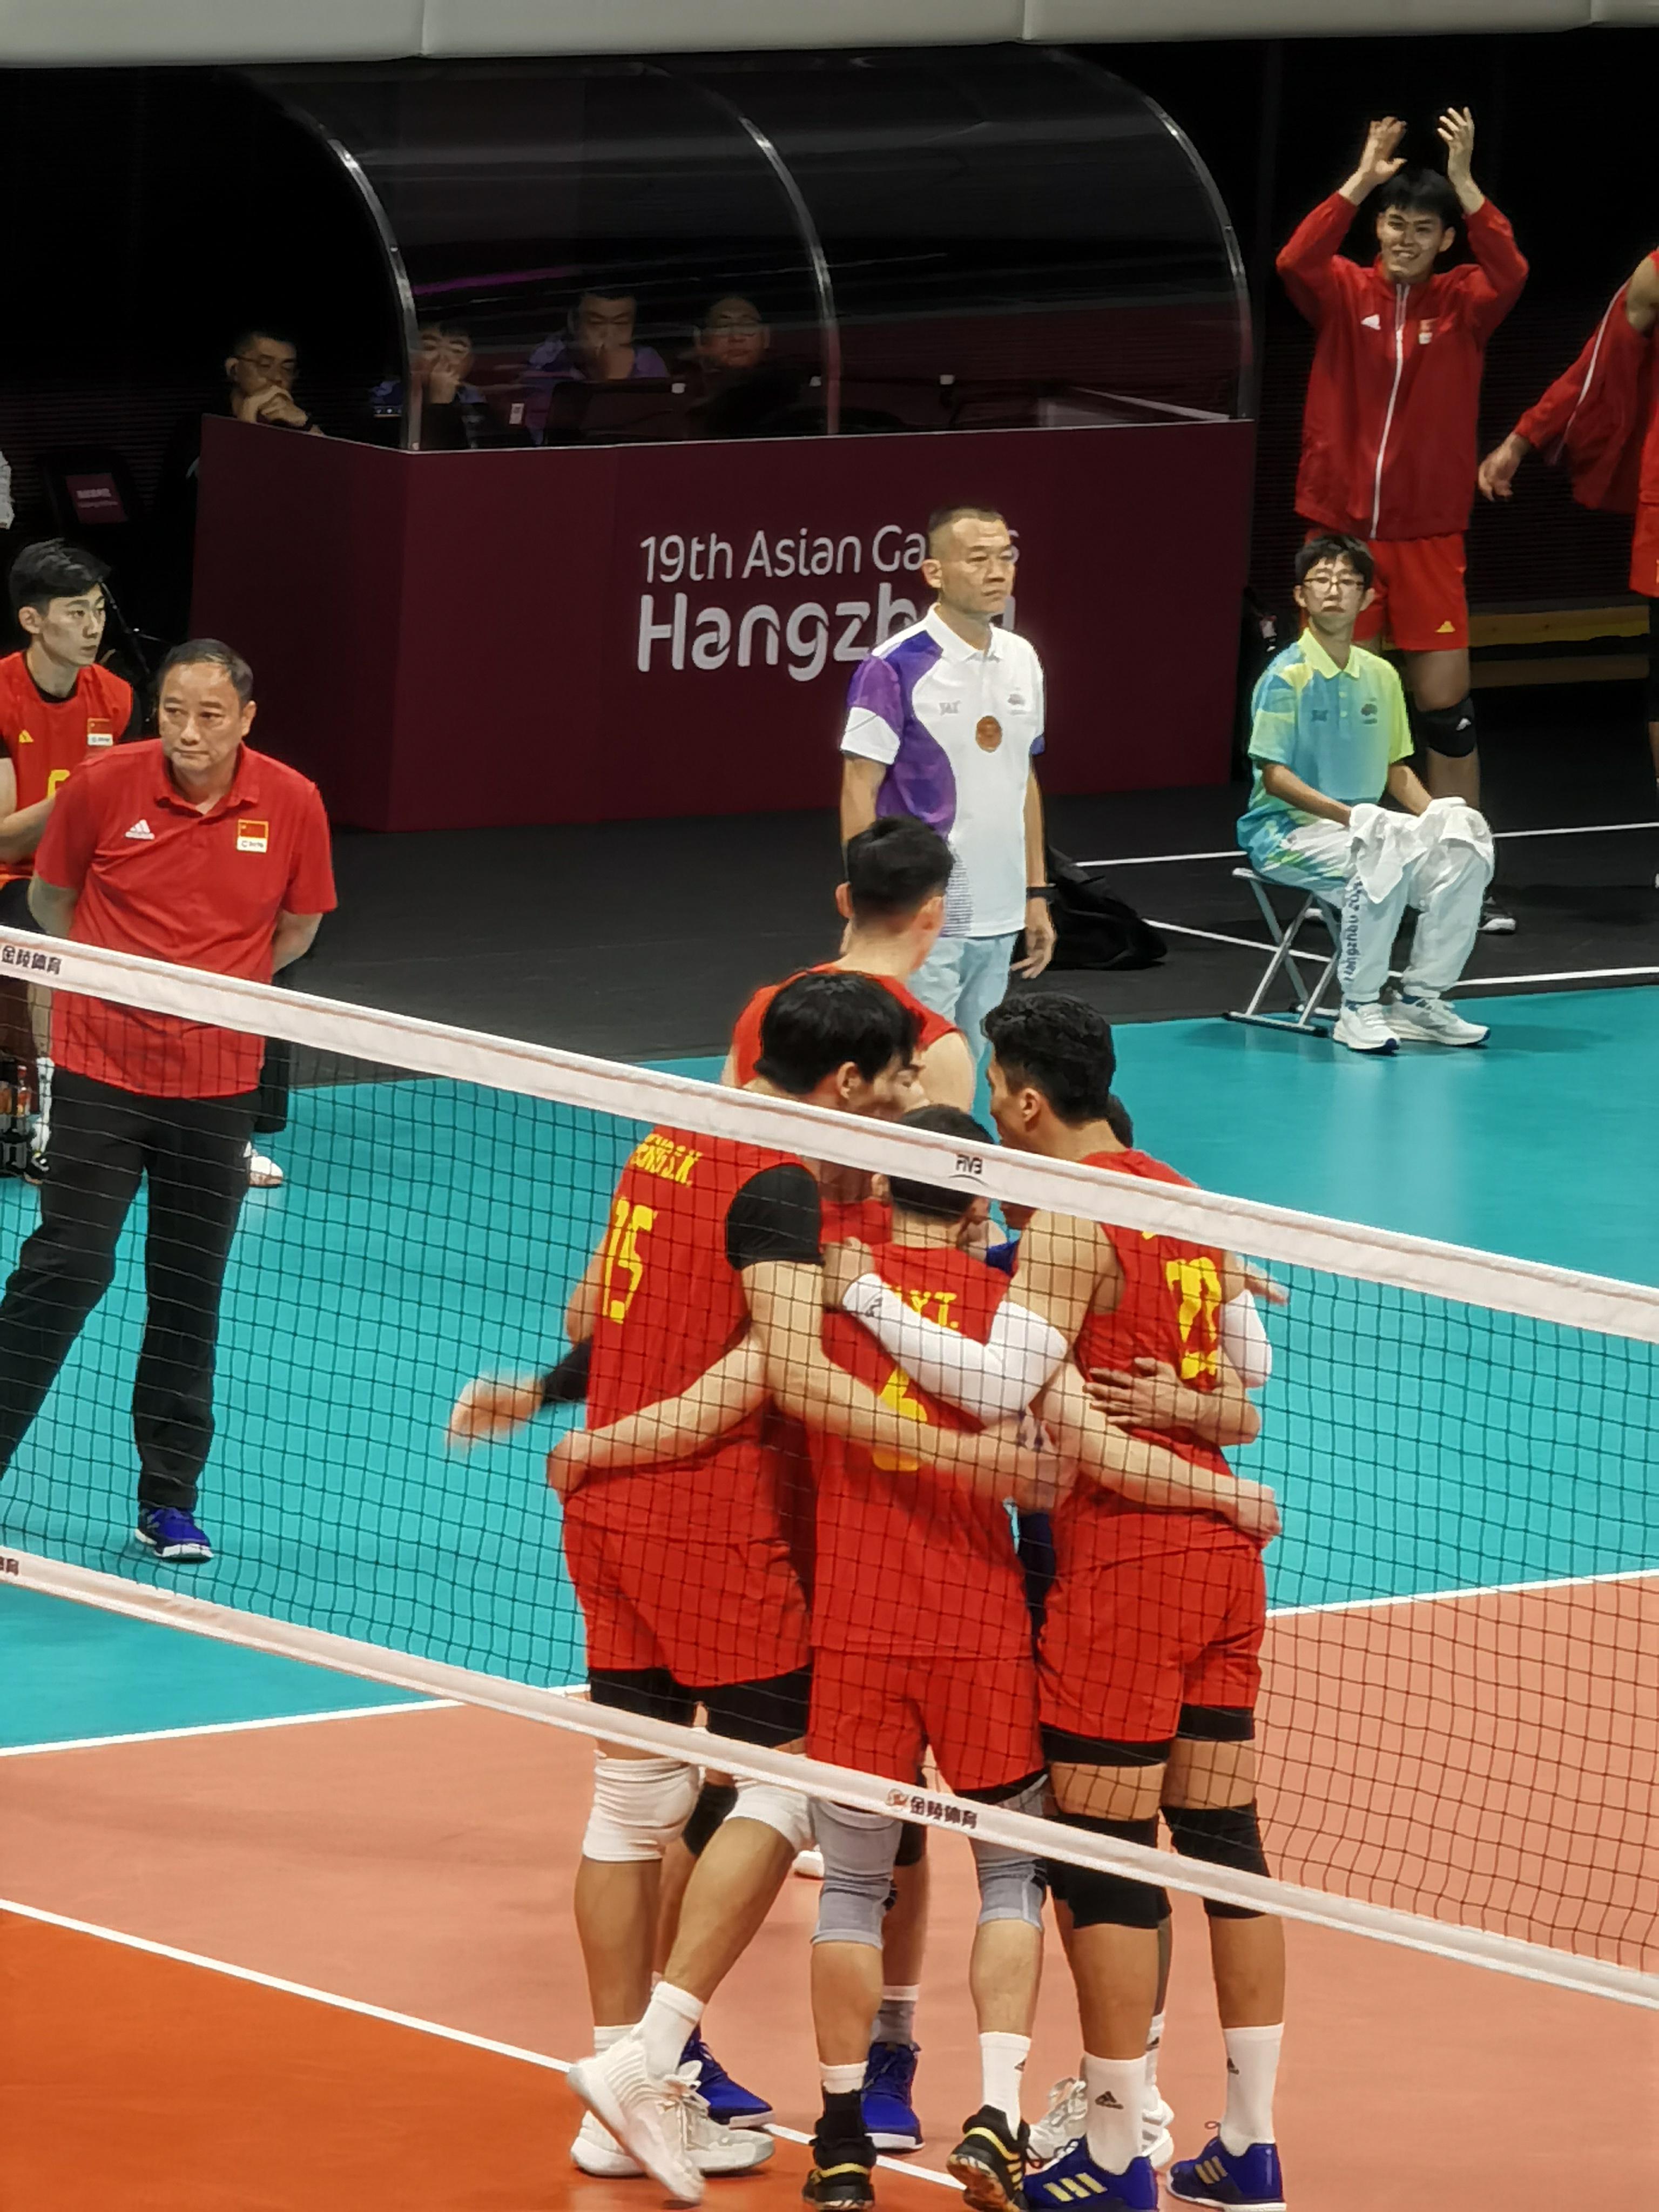 中国男排击败日本队胜在发球 迎战伊朗队全力争冠